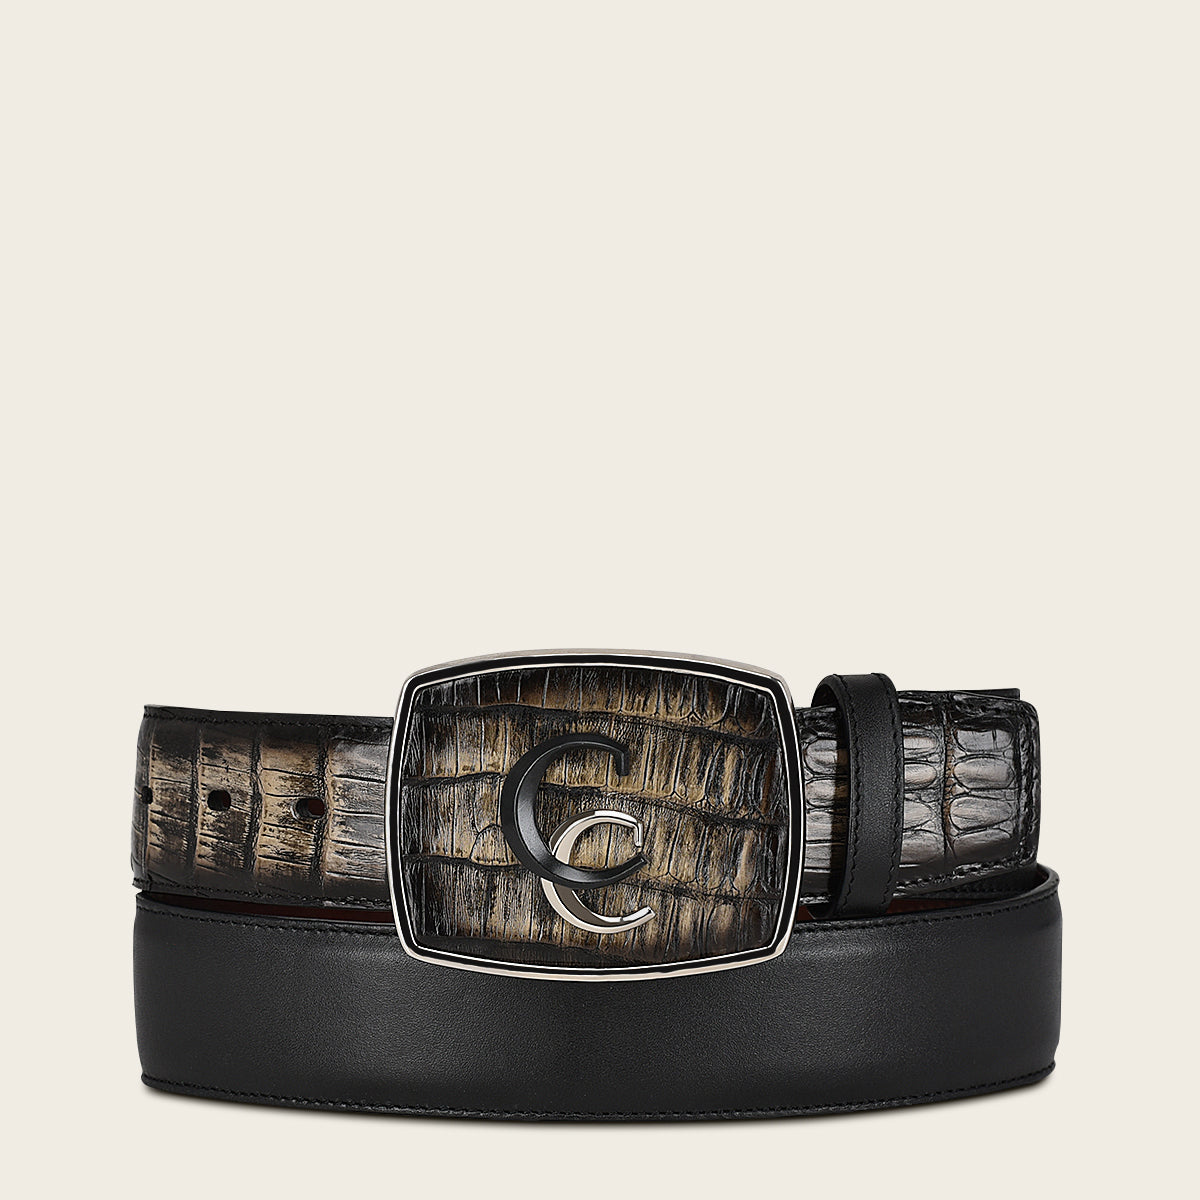 Cinturón western de piel exótica negra pintado a mano con doble inserción metálica